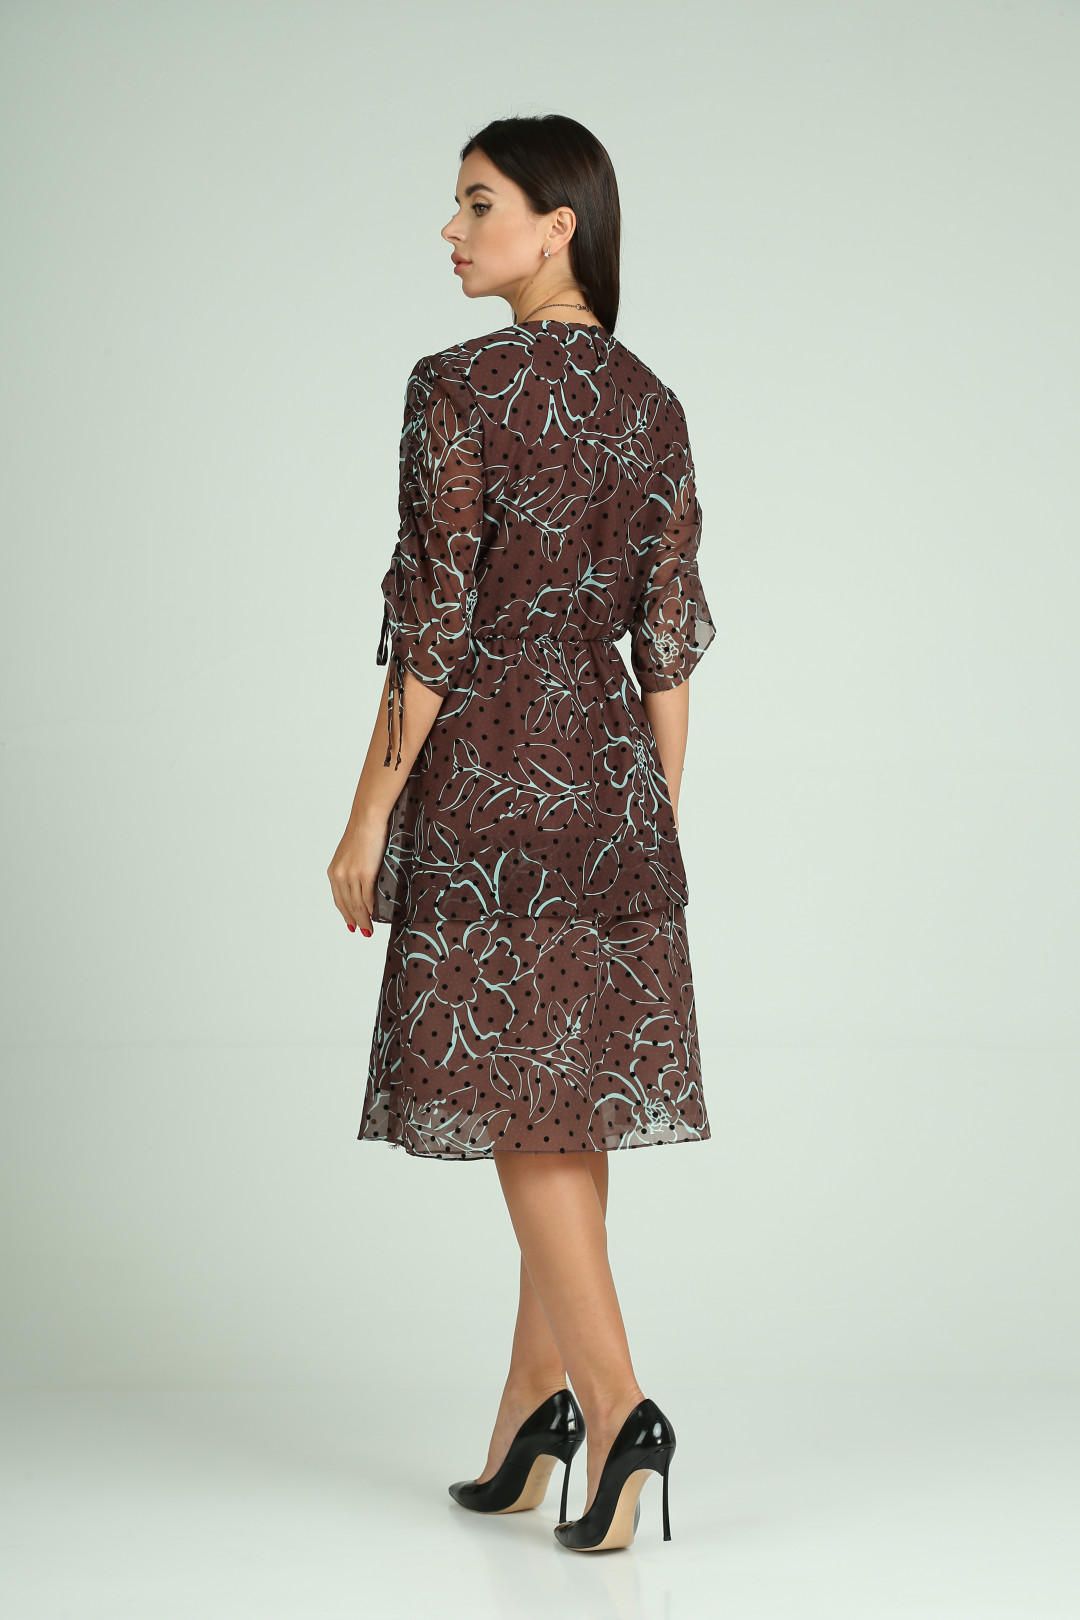 Платье Мода-Версаль 2336 коричневый